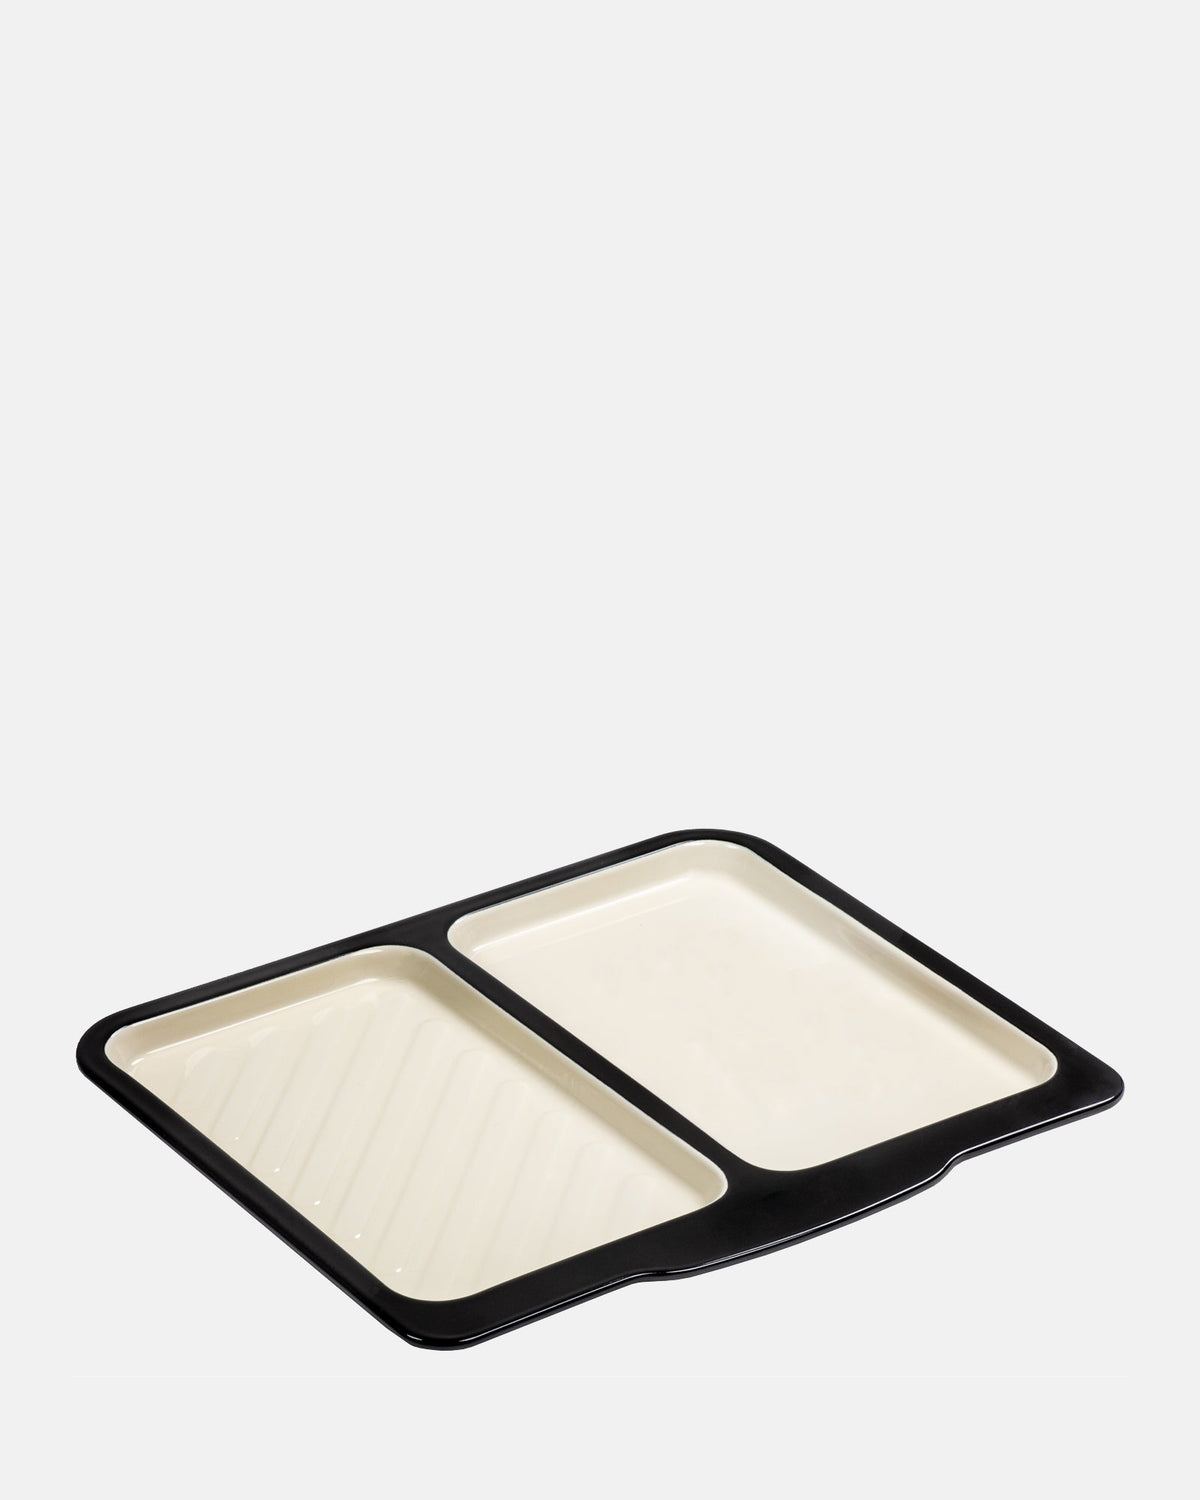 Large Enamel Dual Baking Tray - BRIT LOCKER